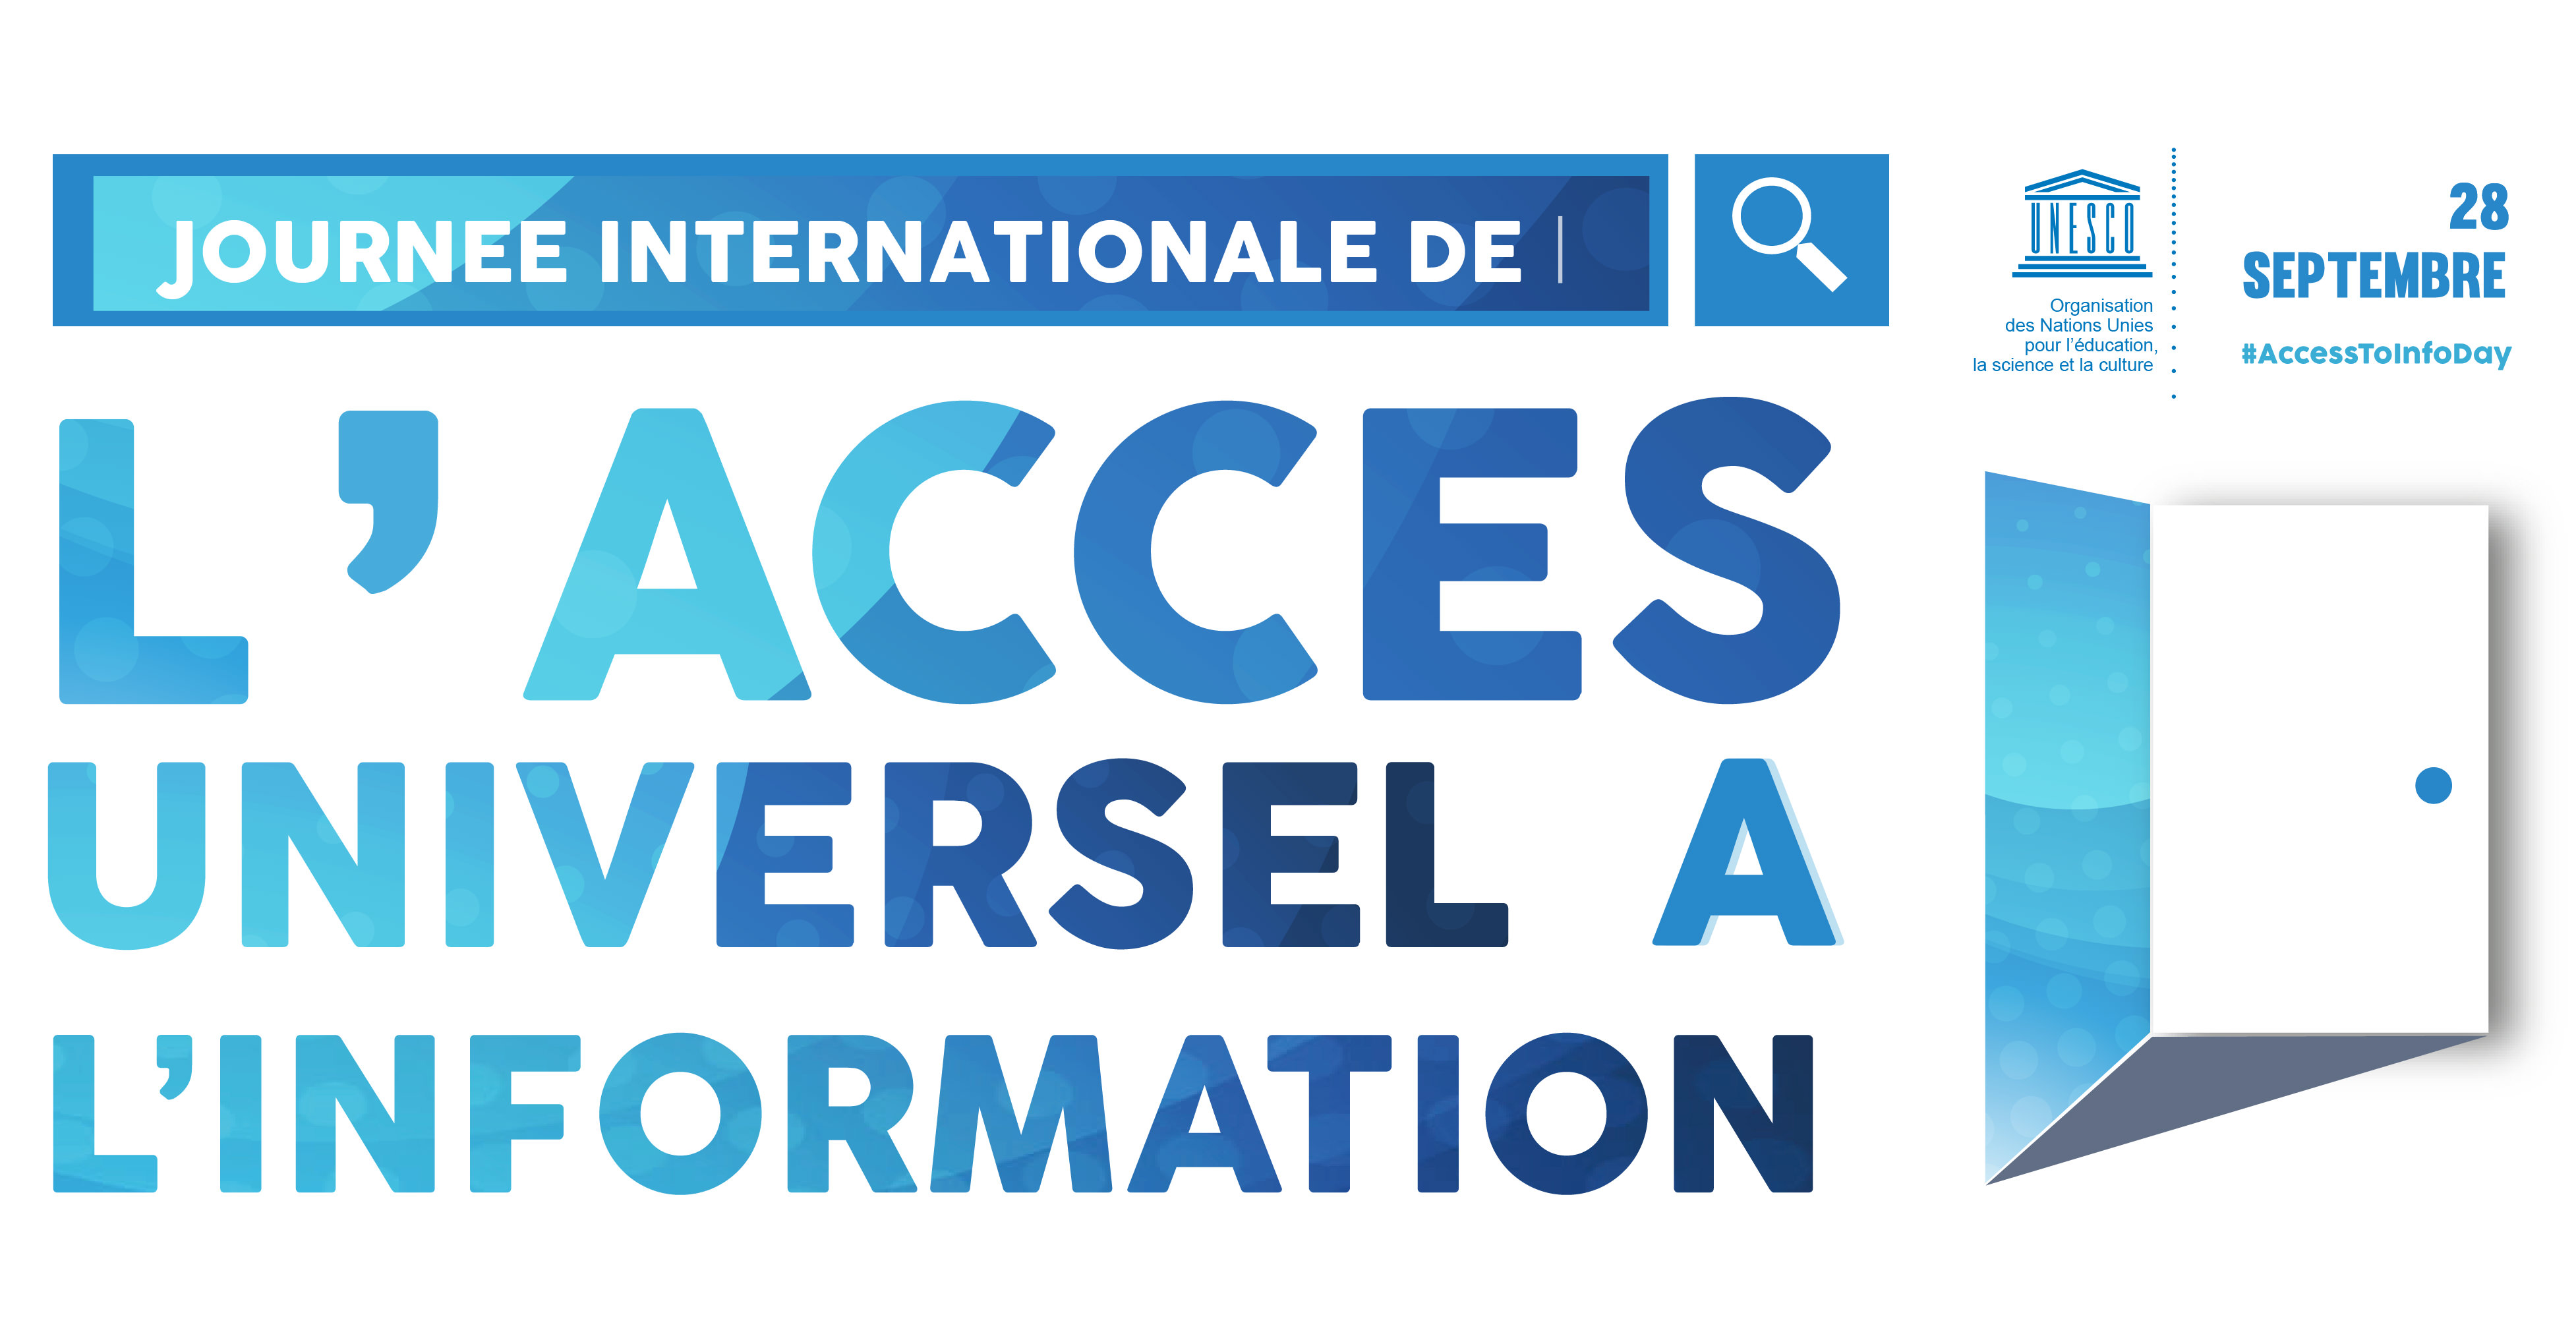 Première édition de la Journée internationale de l’accès universel à l’information